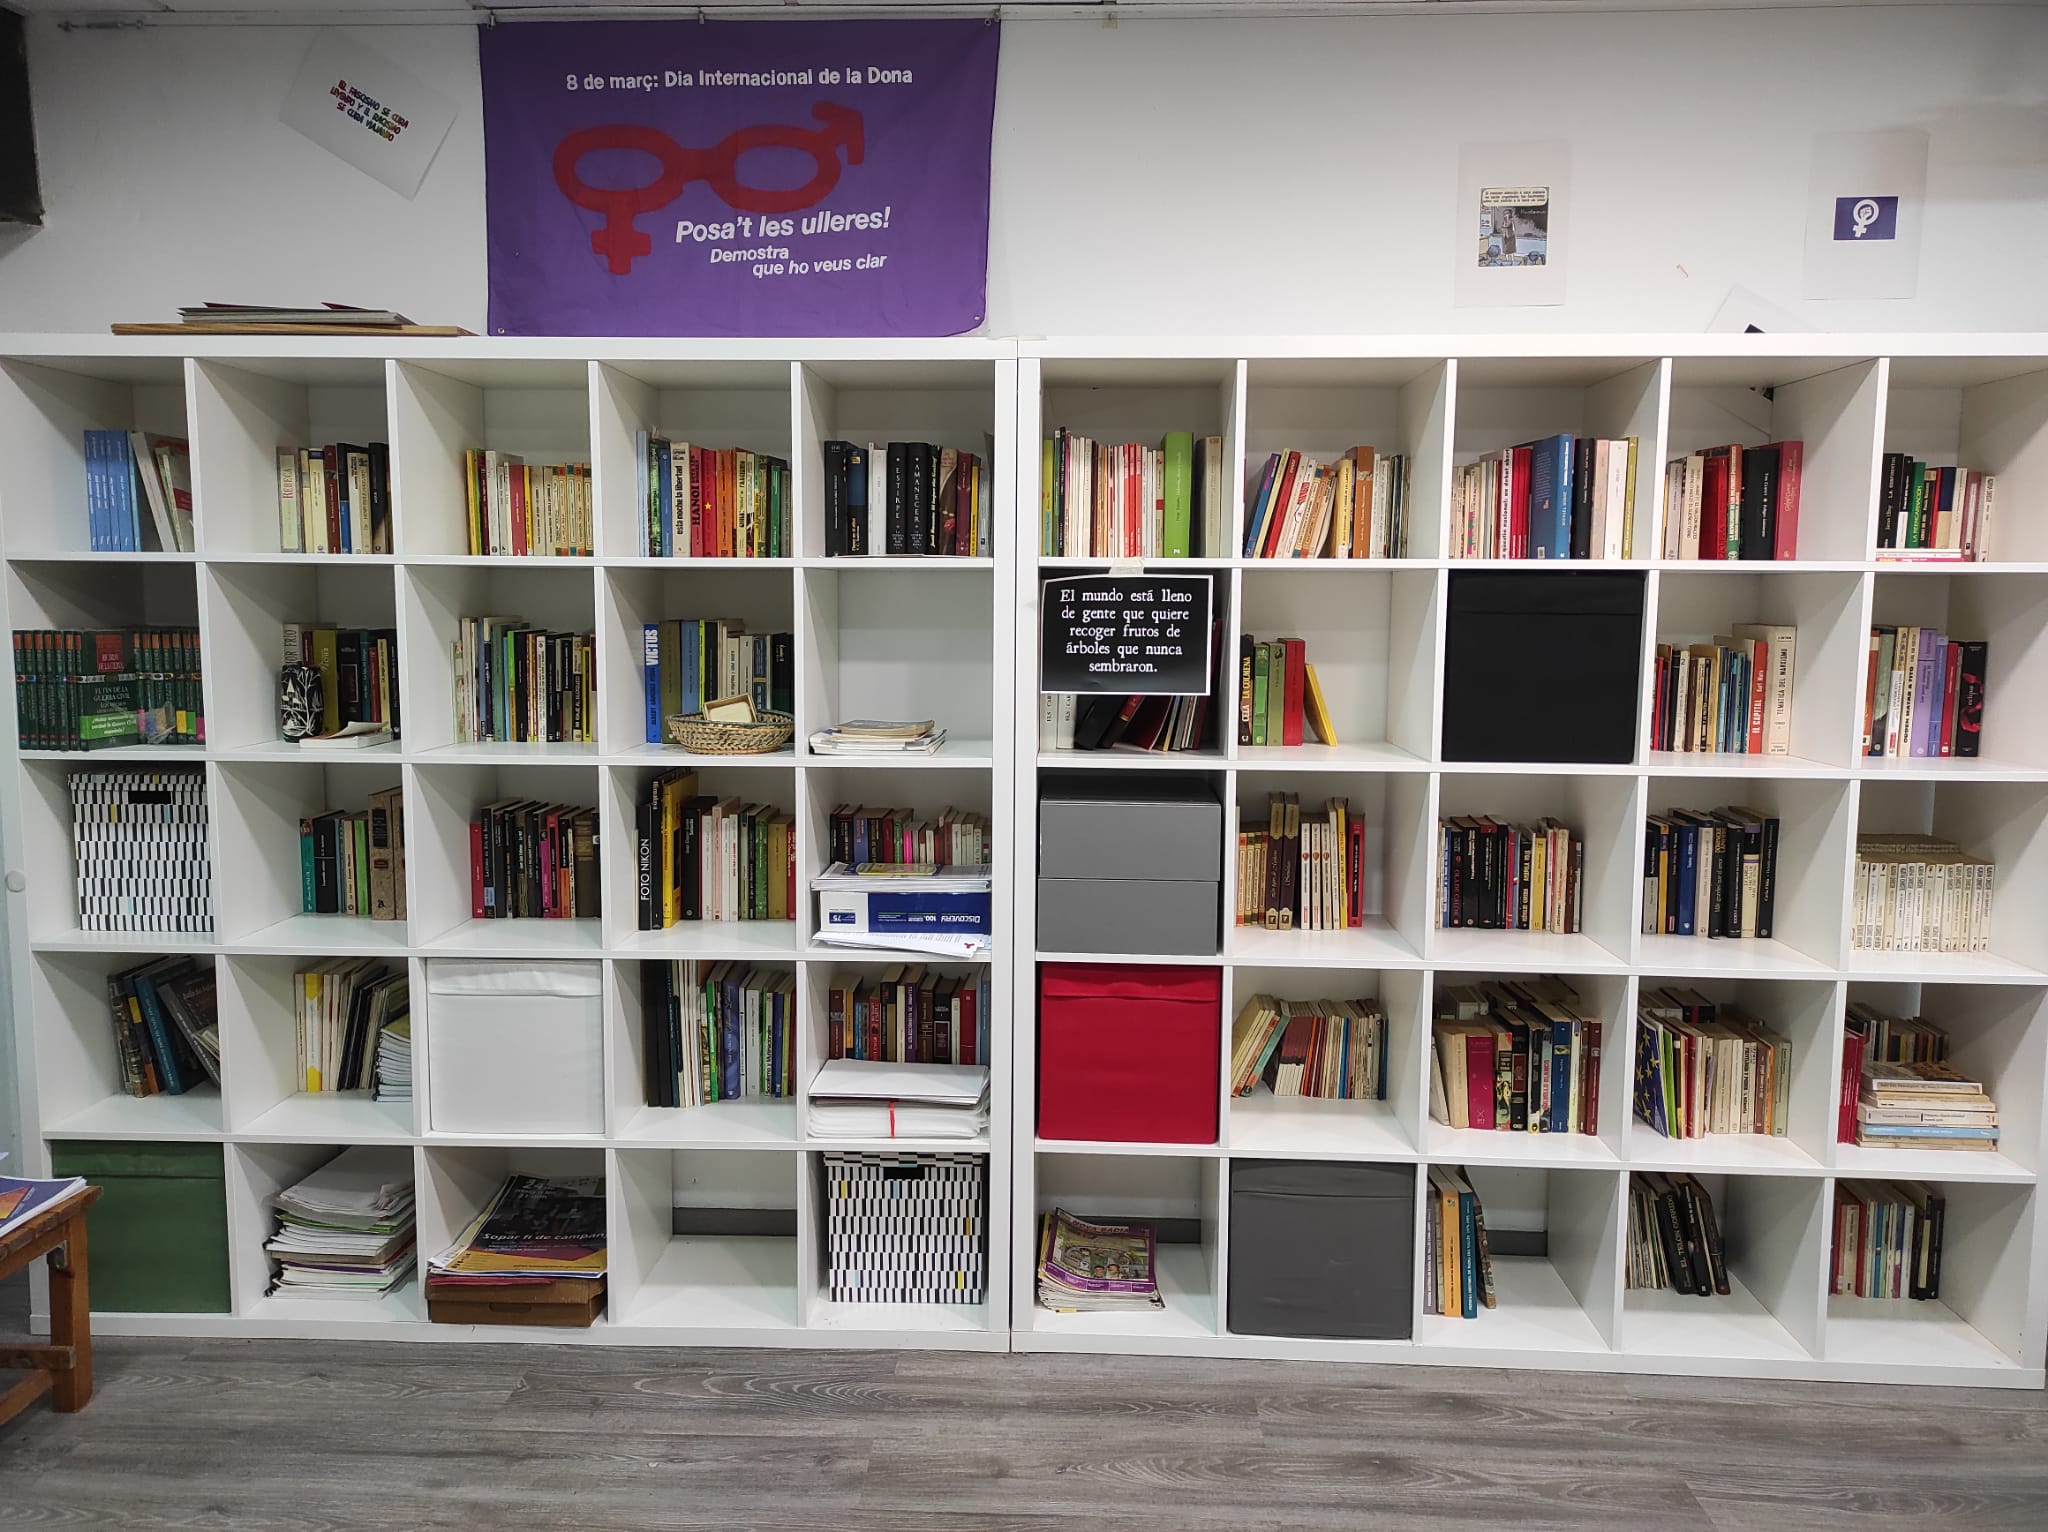 Totes fem Badia organitza un Club d’Intercanvi de llibres al seu local